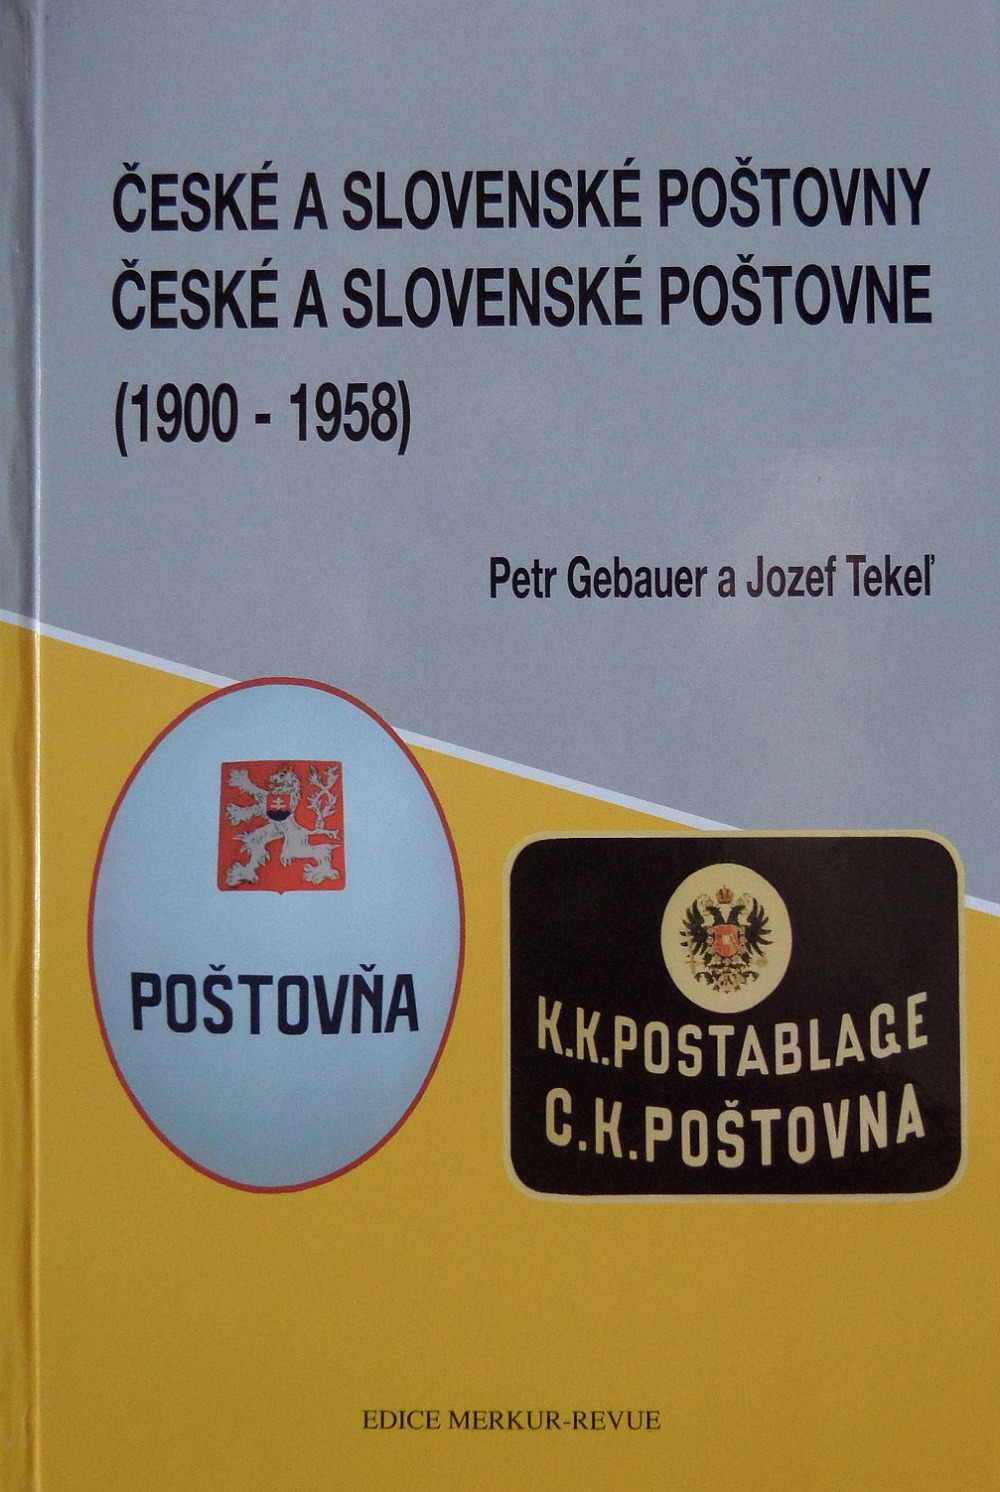 České a slovenské poštovny 1900-1958 / České a slovenské poštovne 1900-1958